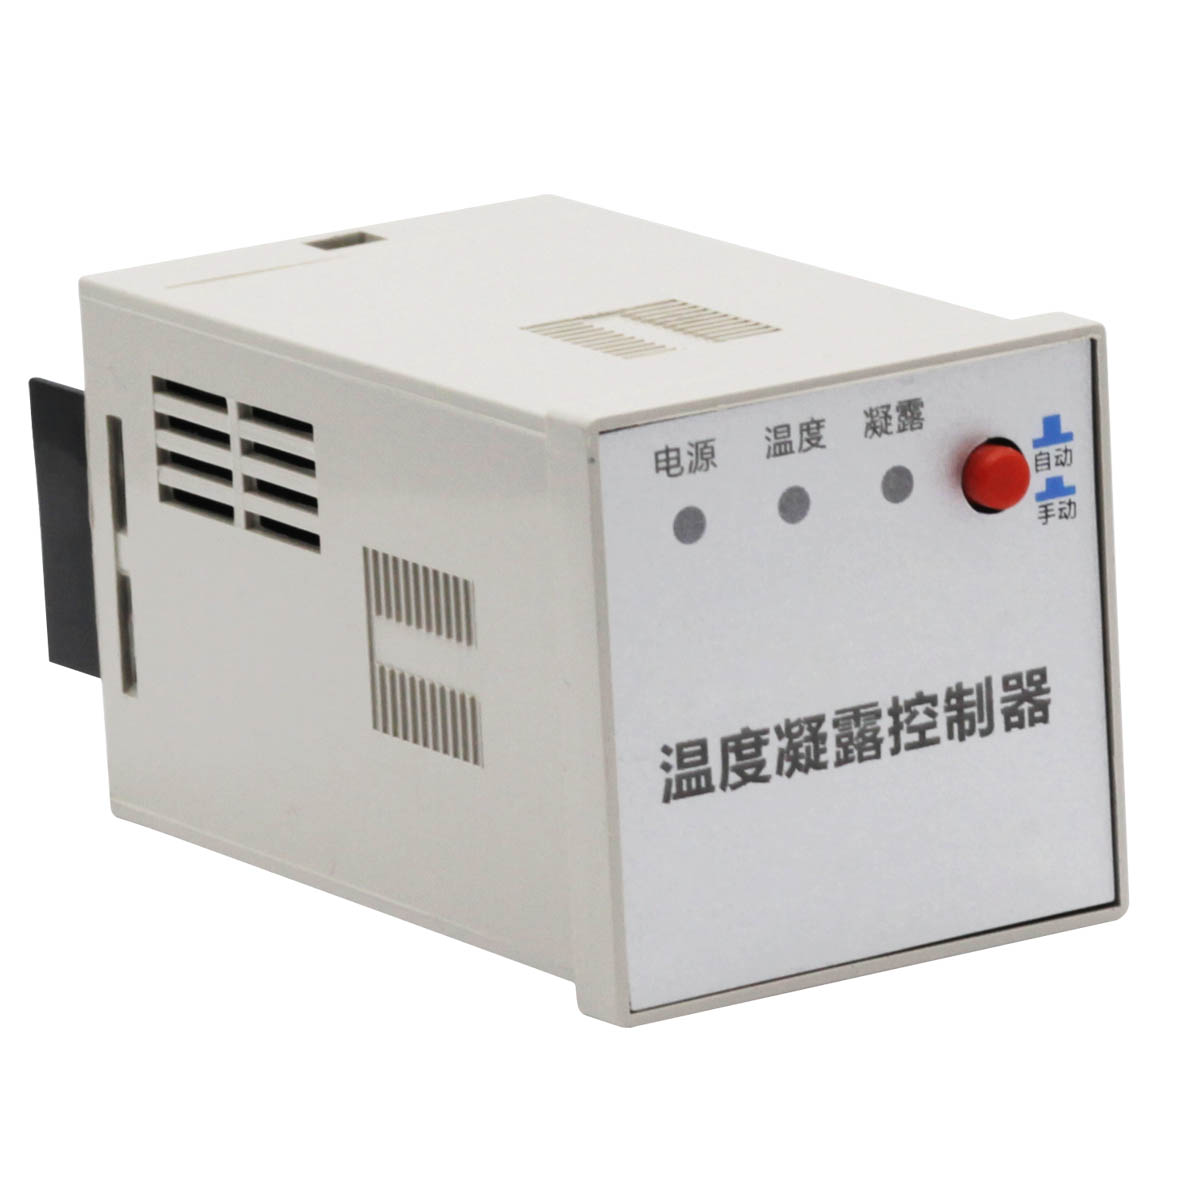 逊克LF-DV11-52A-1-0.2电压变送器/NA-781SG/450-20